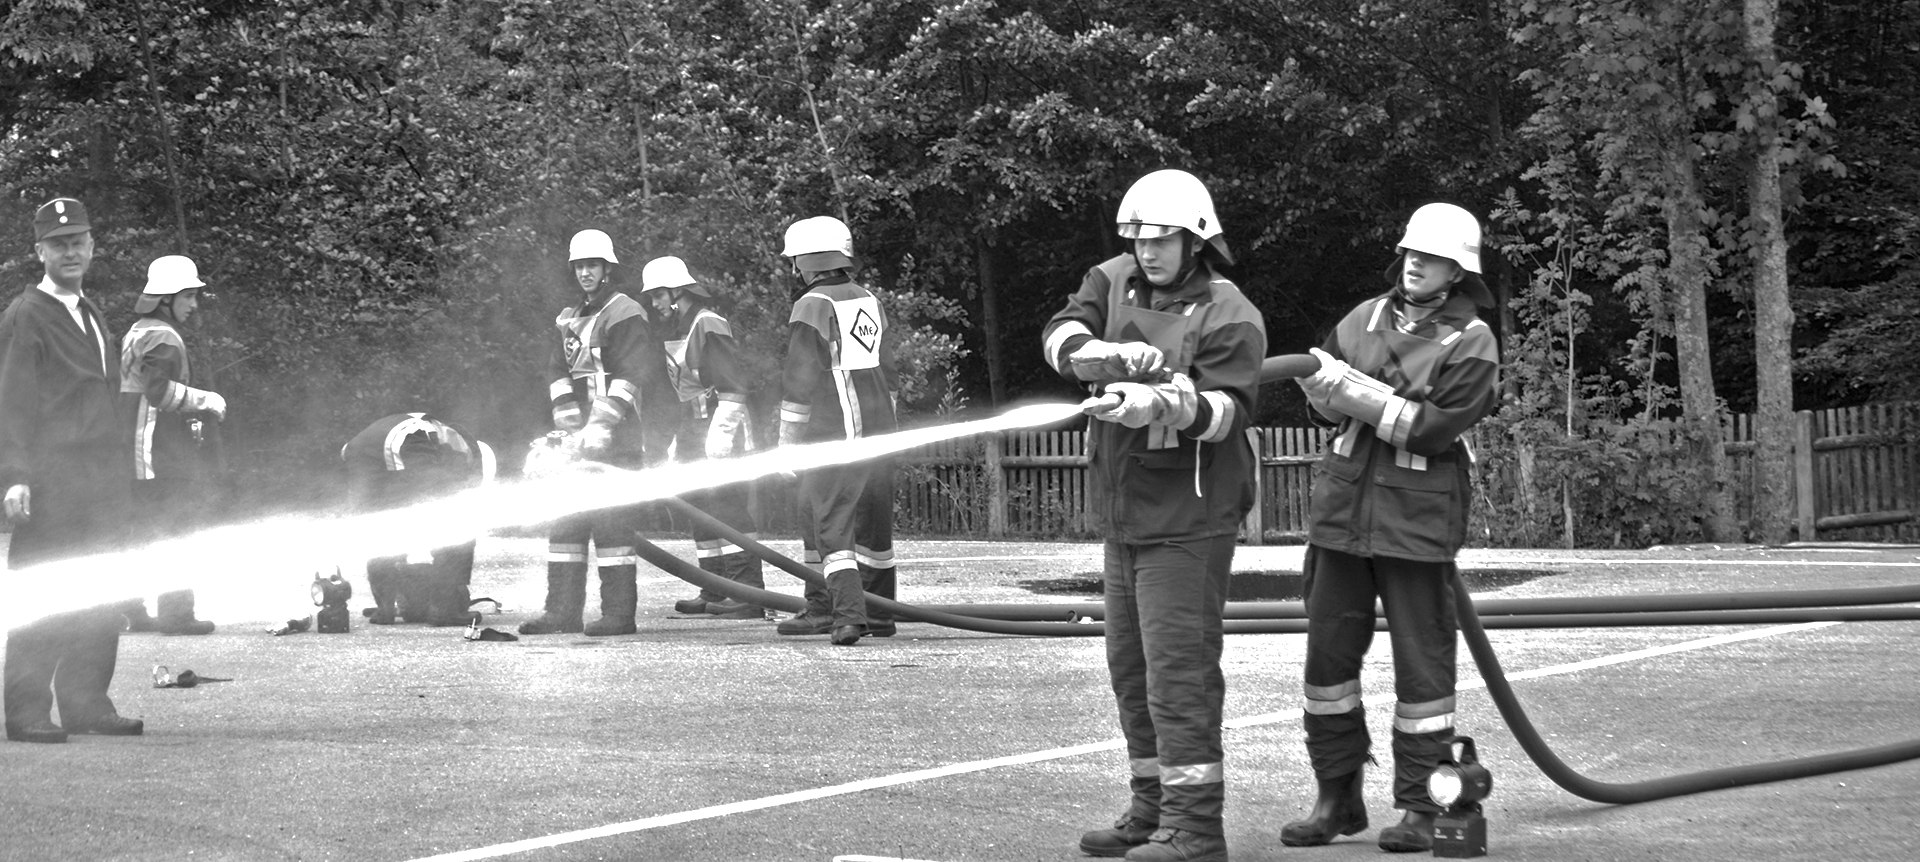 Grainauer Feuerwehr bei Leistungsprüfung, © Gemeinde Grainau